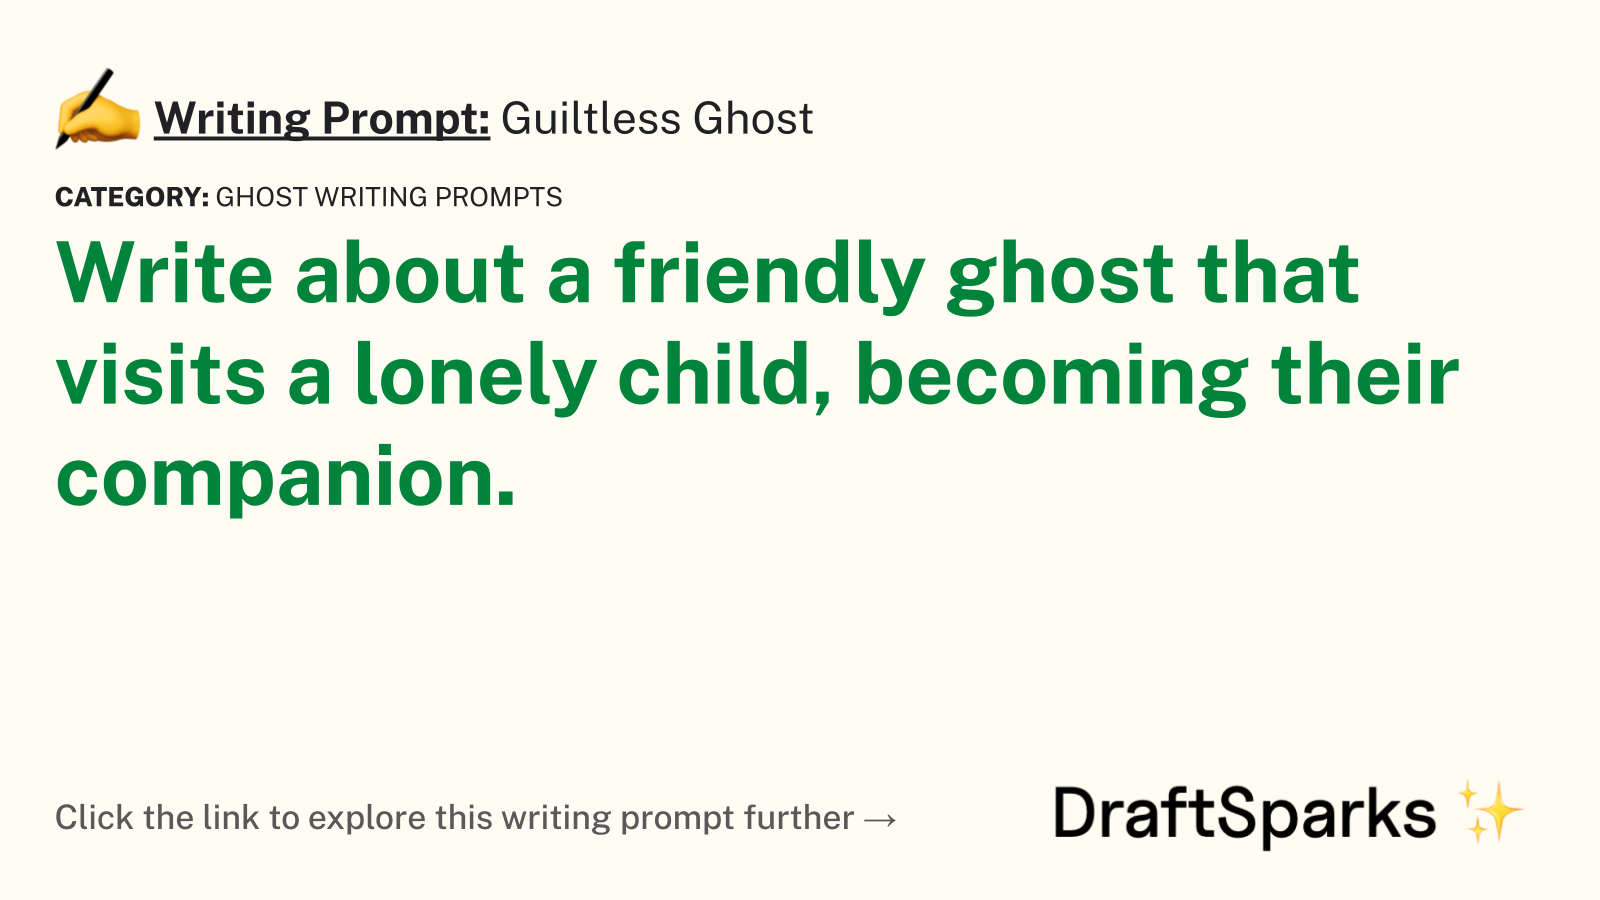 Guiltless Ghost